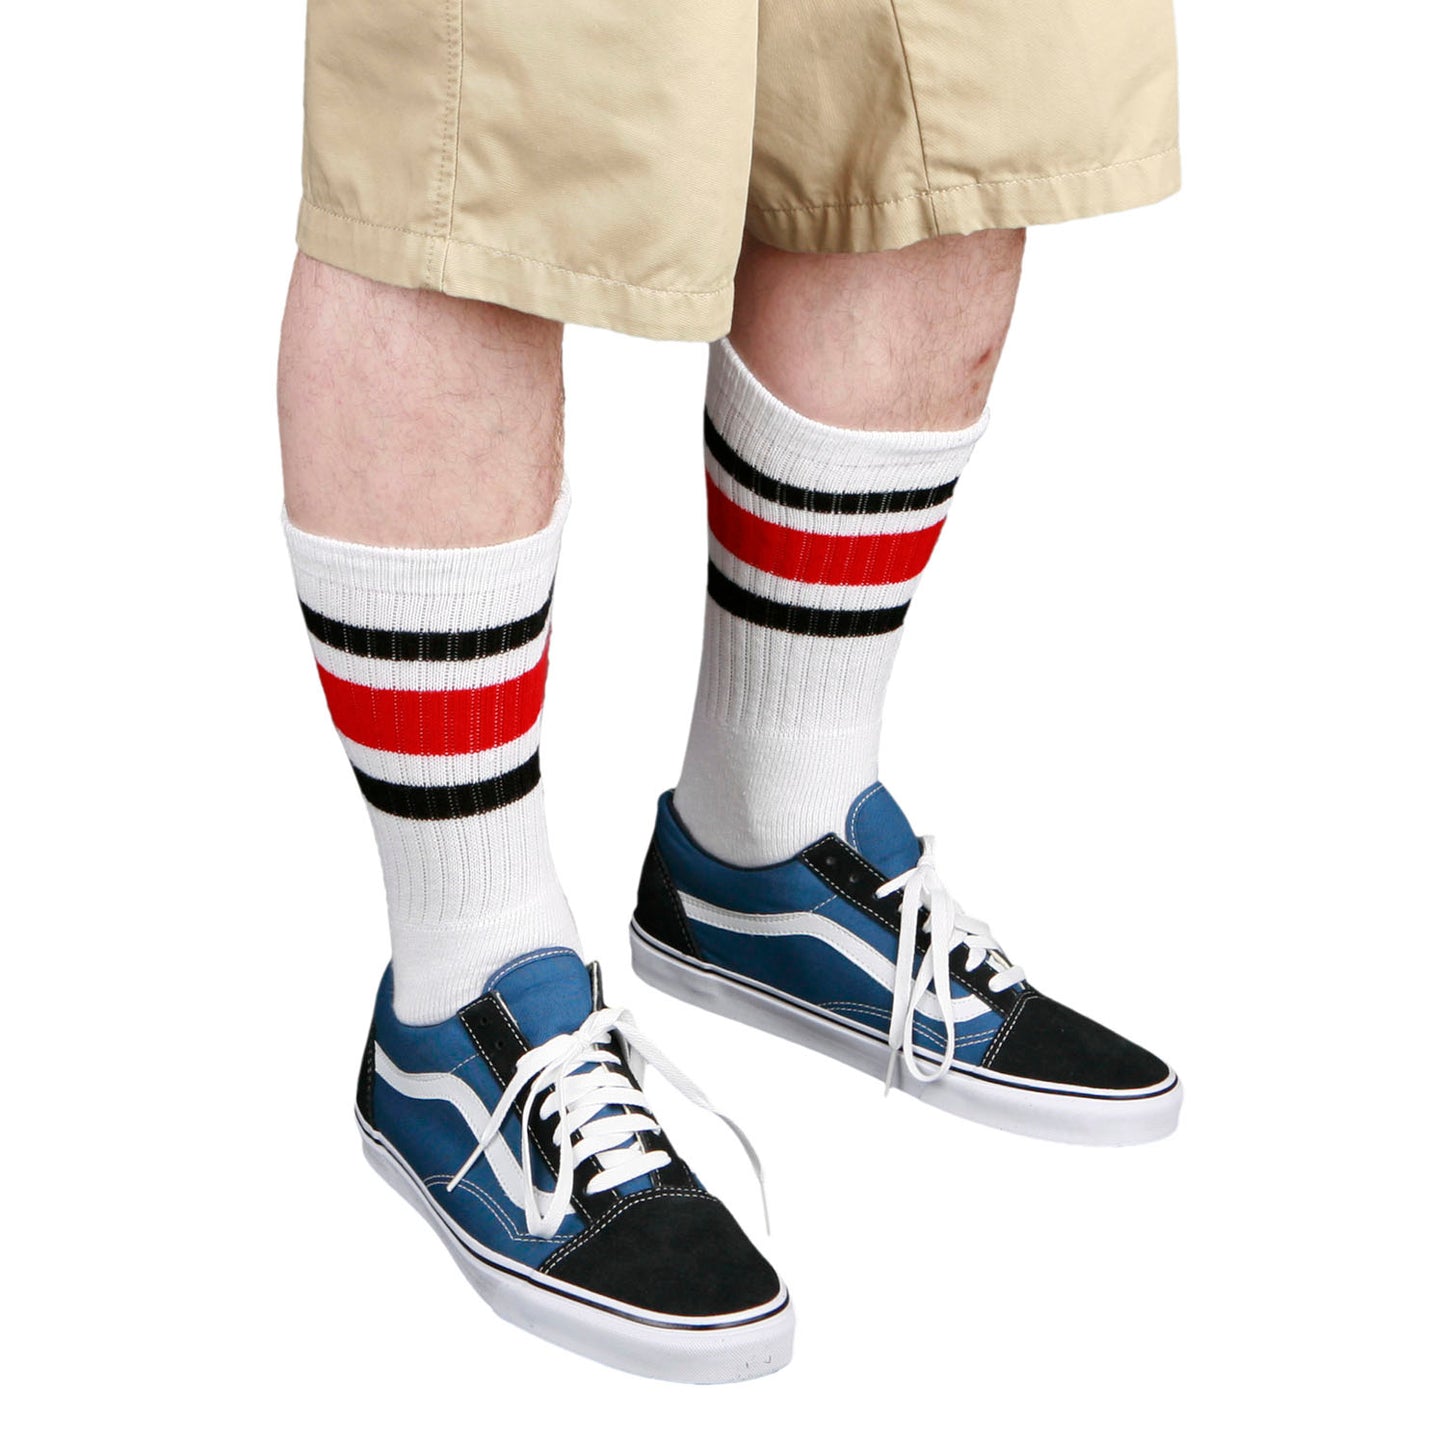 Skatersocks 19 Inch Mid Calf Tube Socks white - royal blue red striped